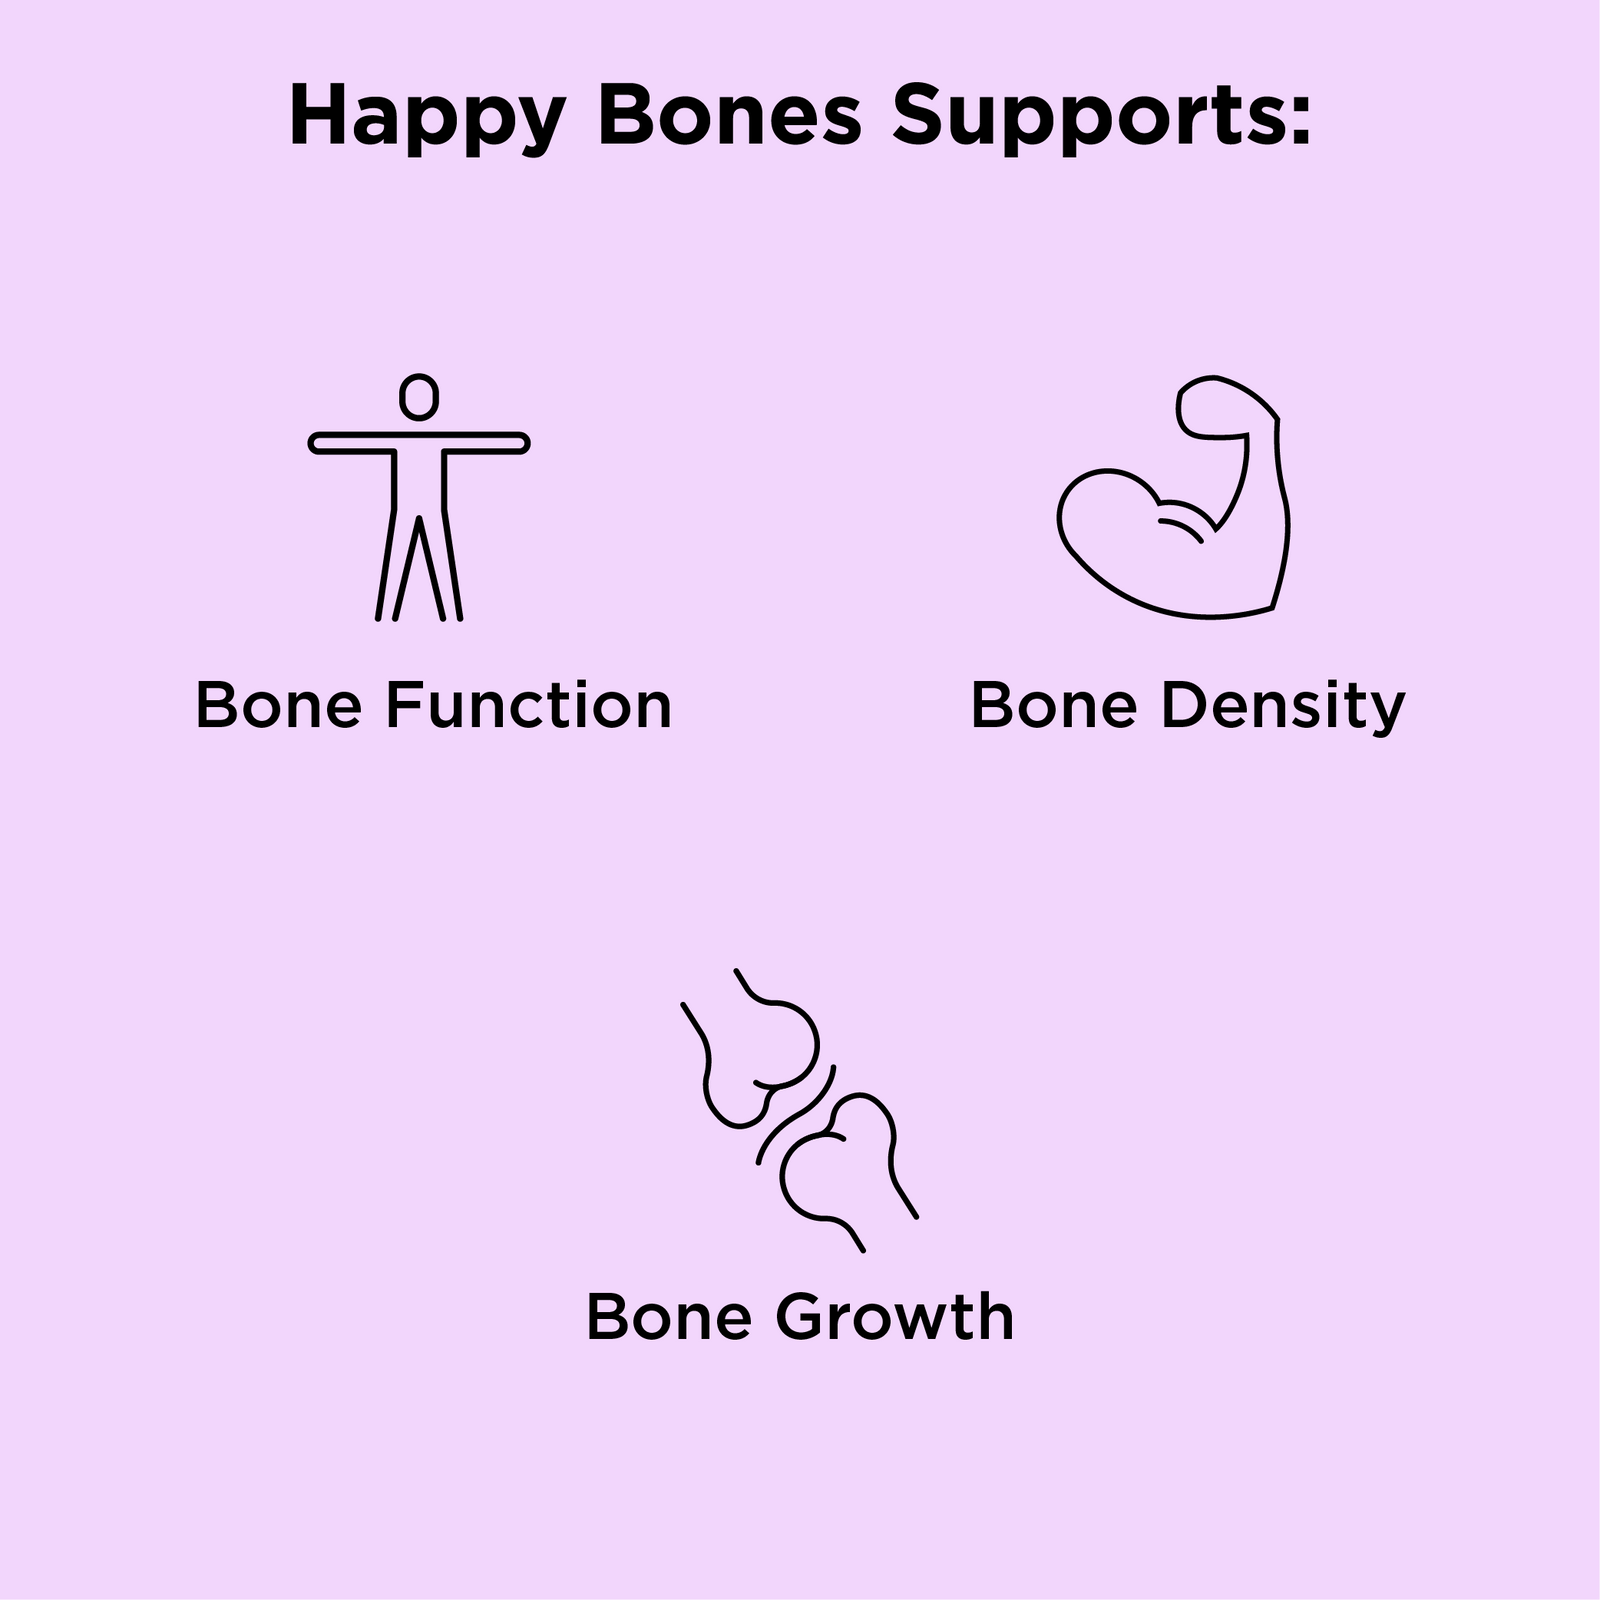 NBPure Happy Bones